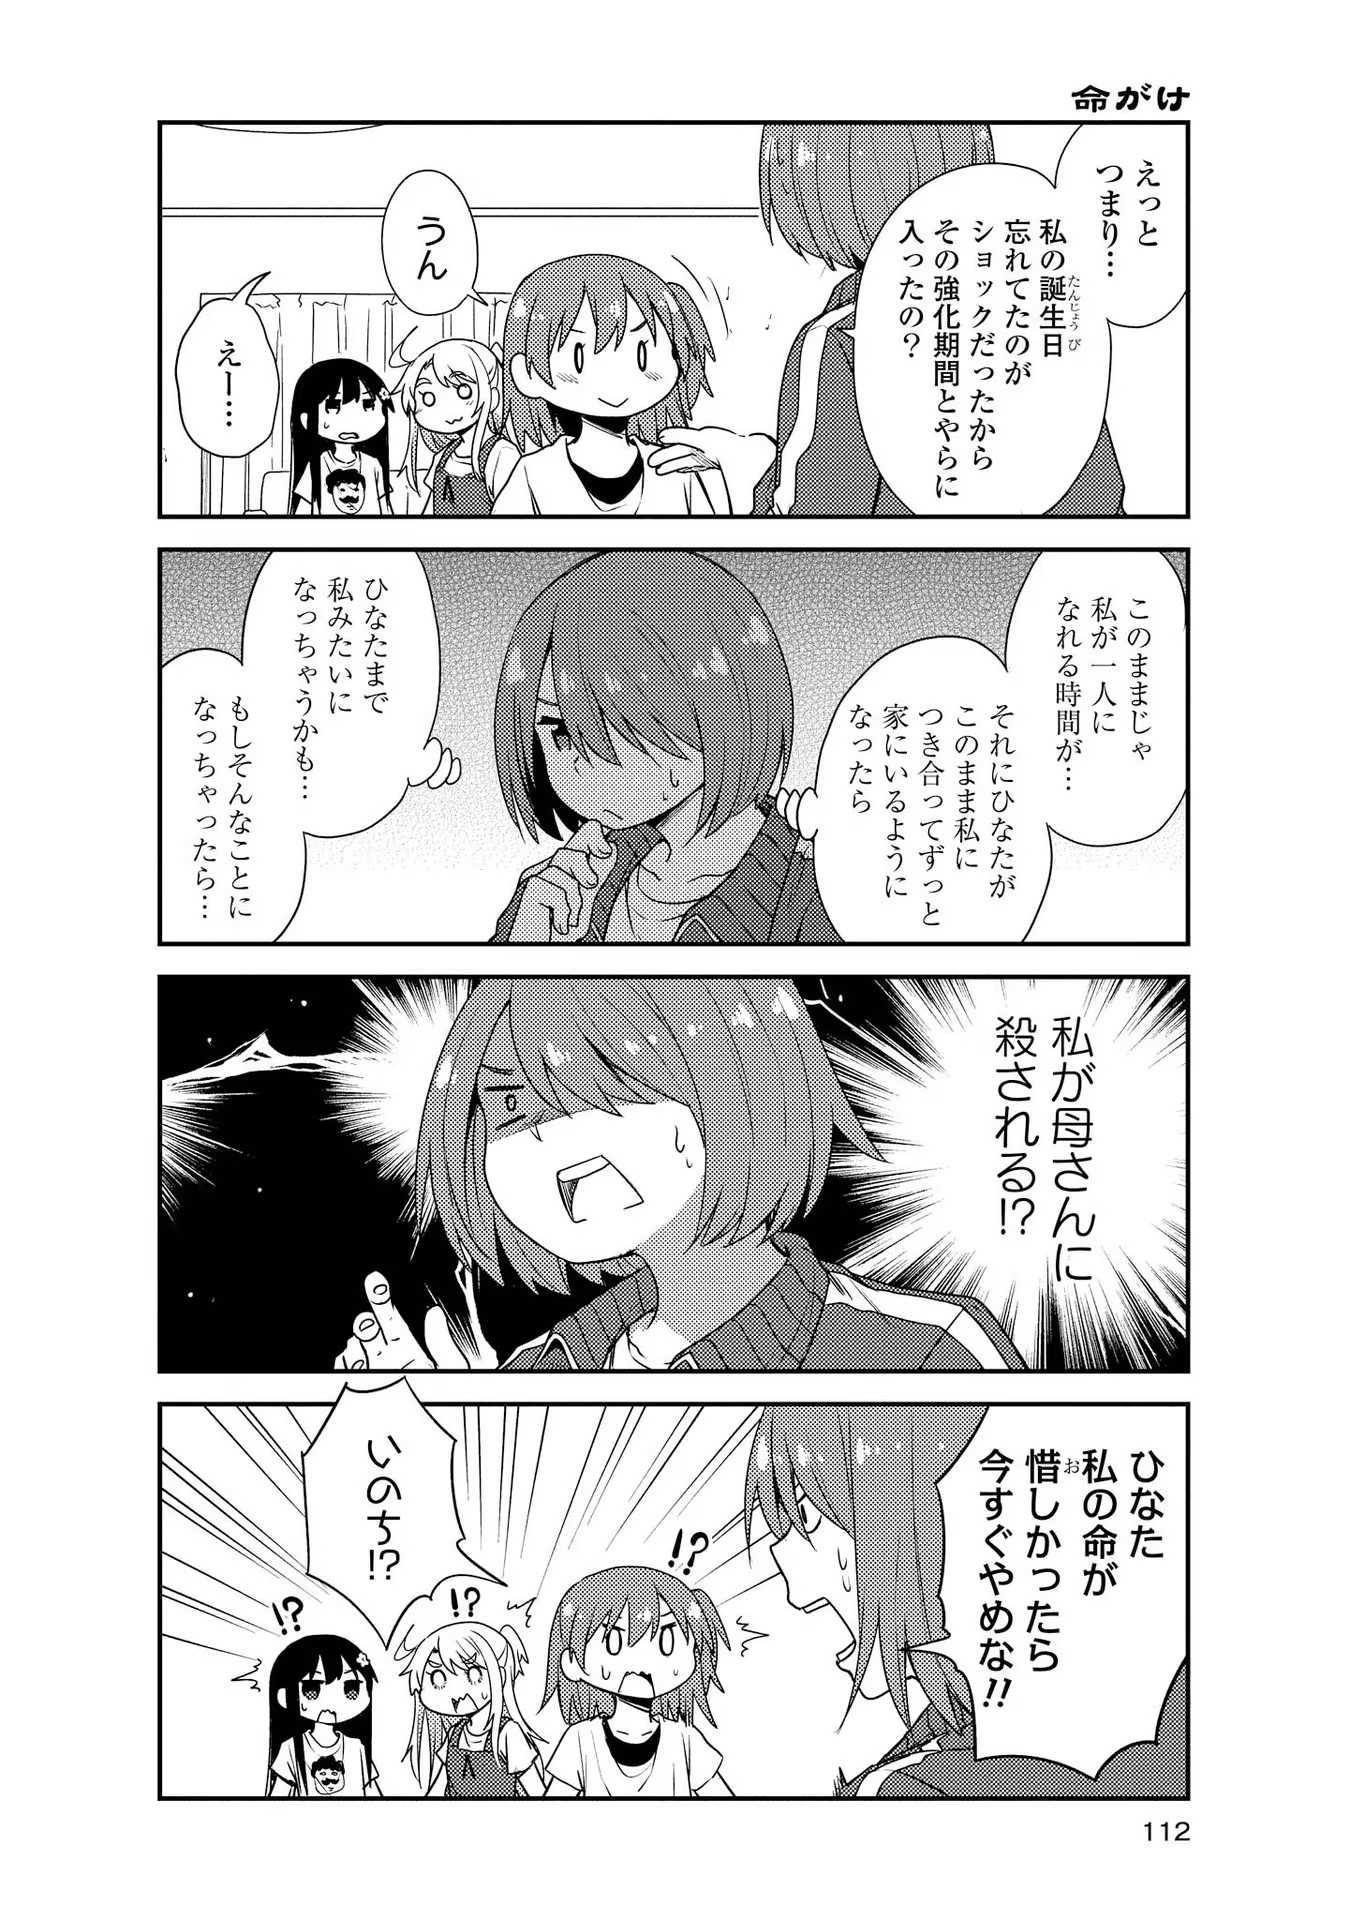 Watashi ni Tenshi ga Maiorita! - Chapter 18 - Page 4